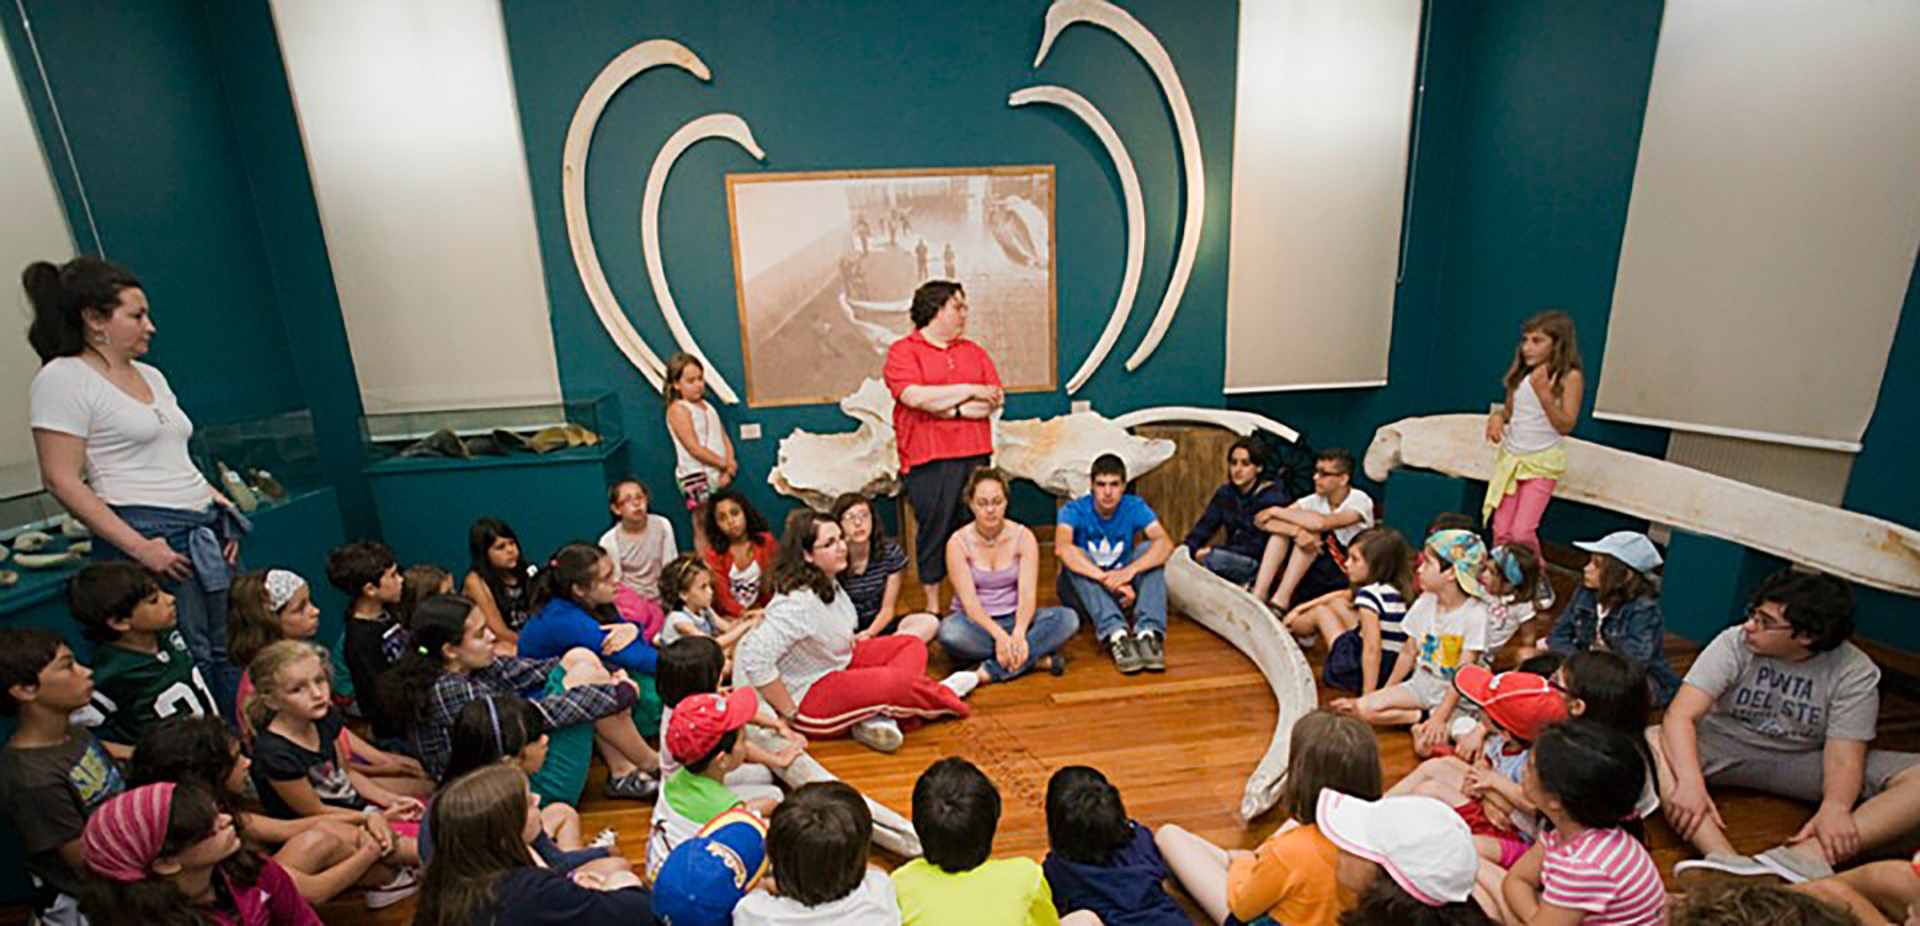 A imaxe amosa unha das salas do Museo provincial do Mar, presidad por ósos de balea sobre a parqde azul turquesa. Vemos a dúas traballadoras do museo de pé entre un numeroso grupo de nenos e nenas sentado no chan de madeira. Parece unha visita escolar de fin de curso